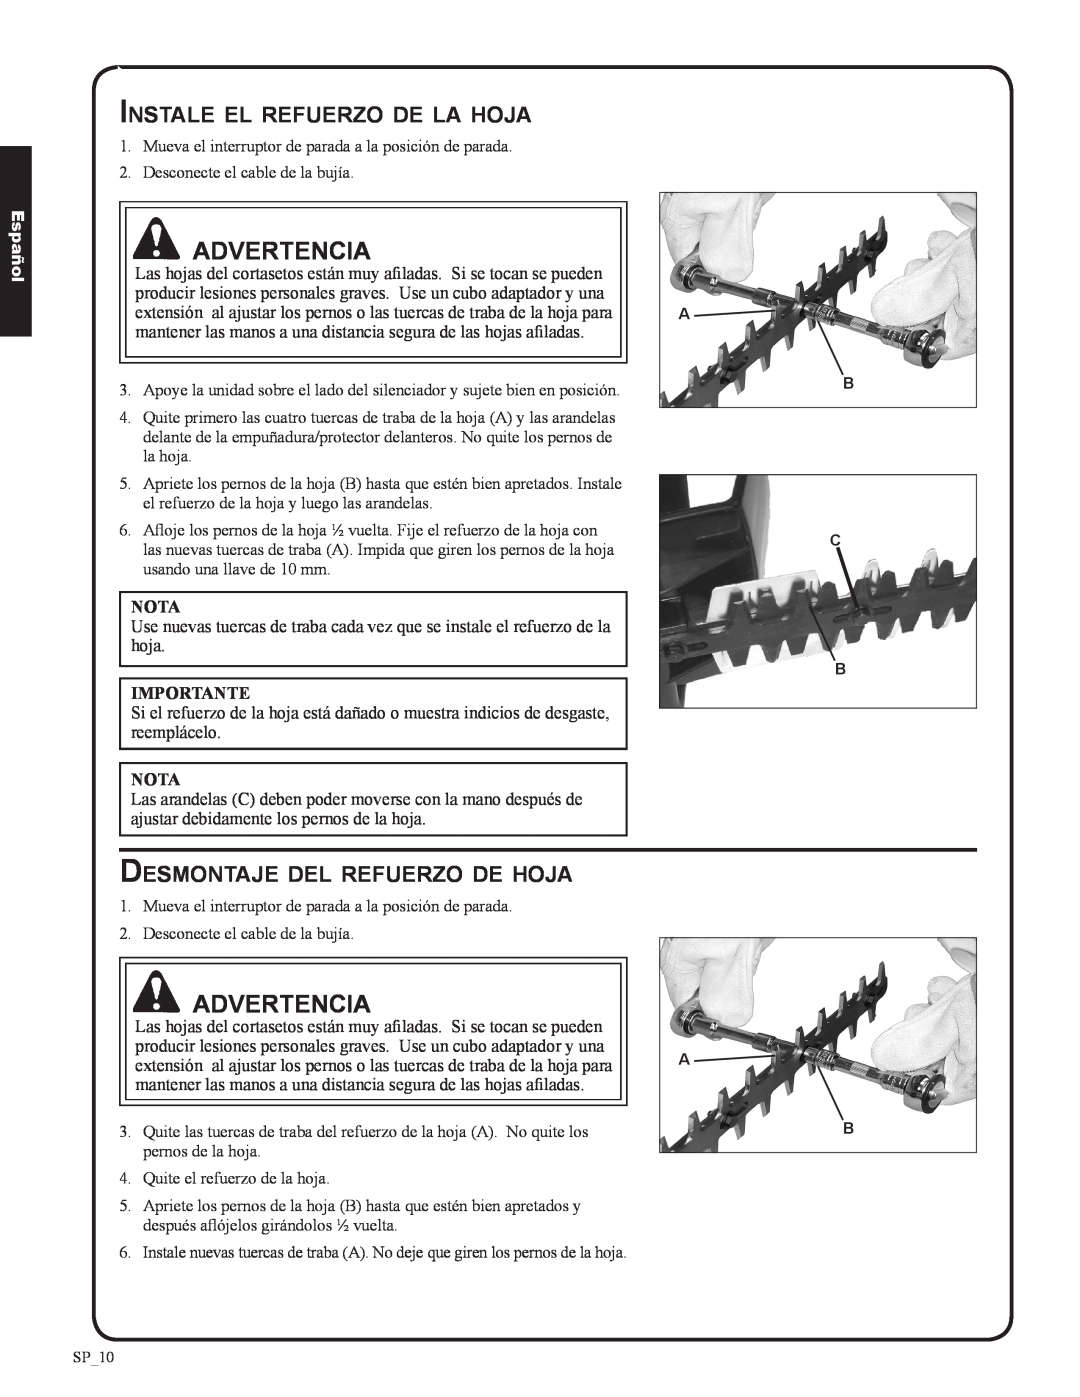 Shindaiwa DH212, 82053 manual Instale el refuerzo de la hoja, Desmontaje del refuerzo de hoja, Advertencia, Español 